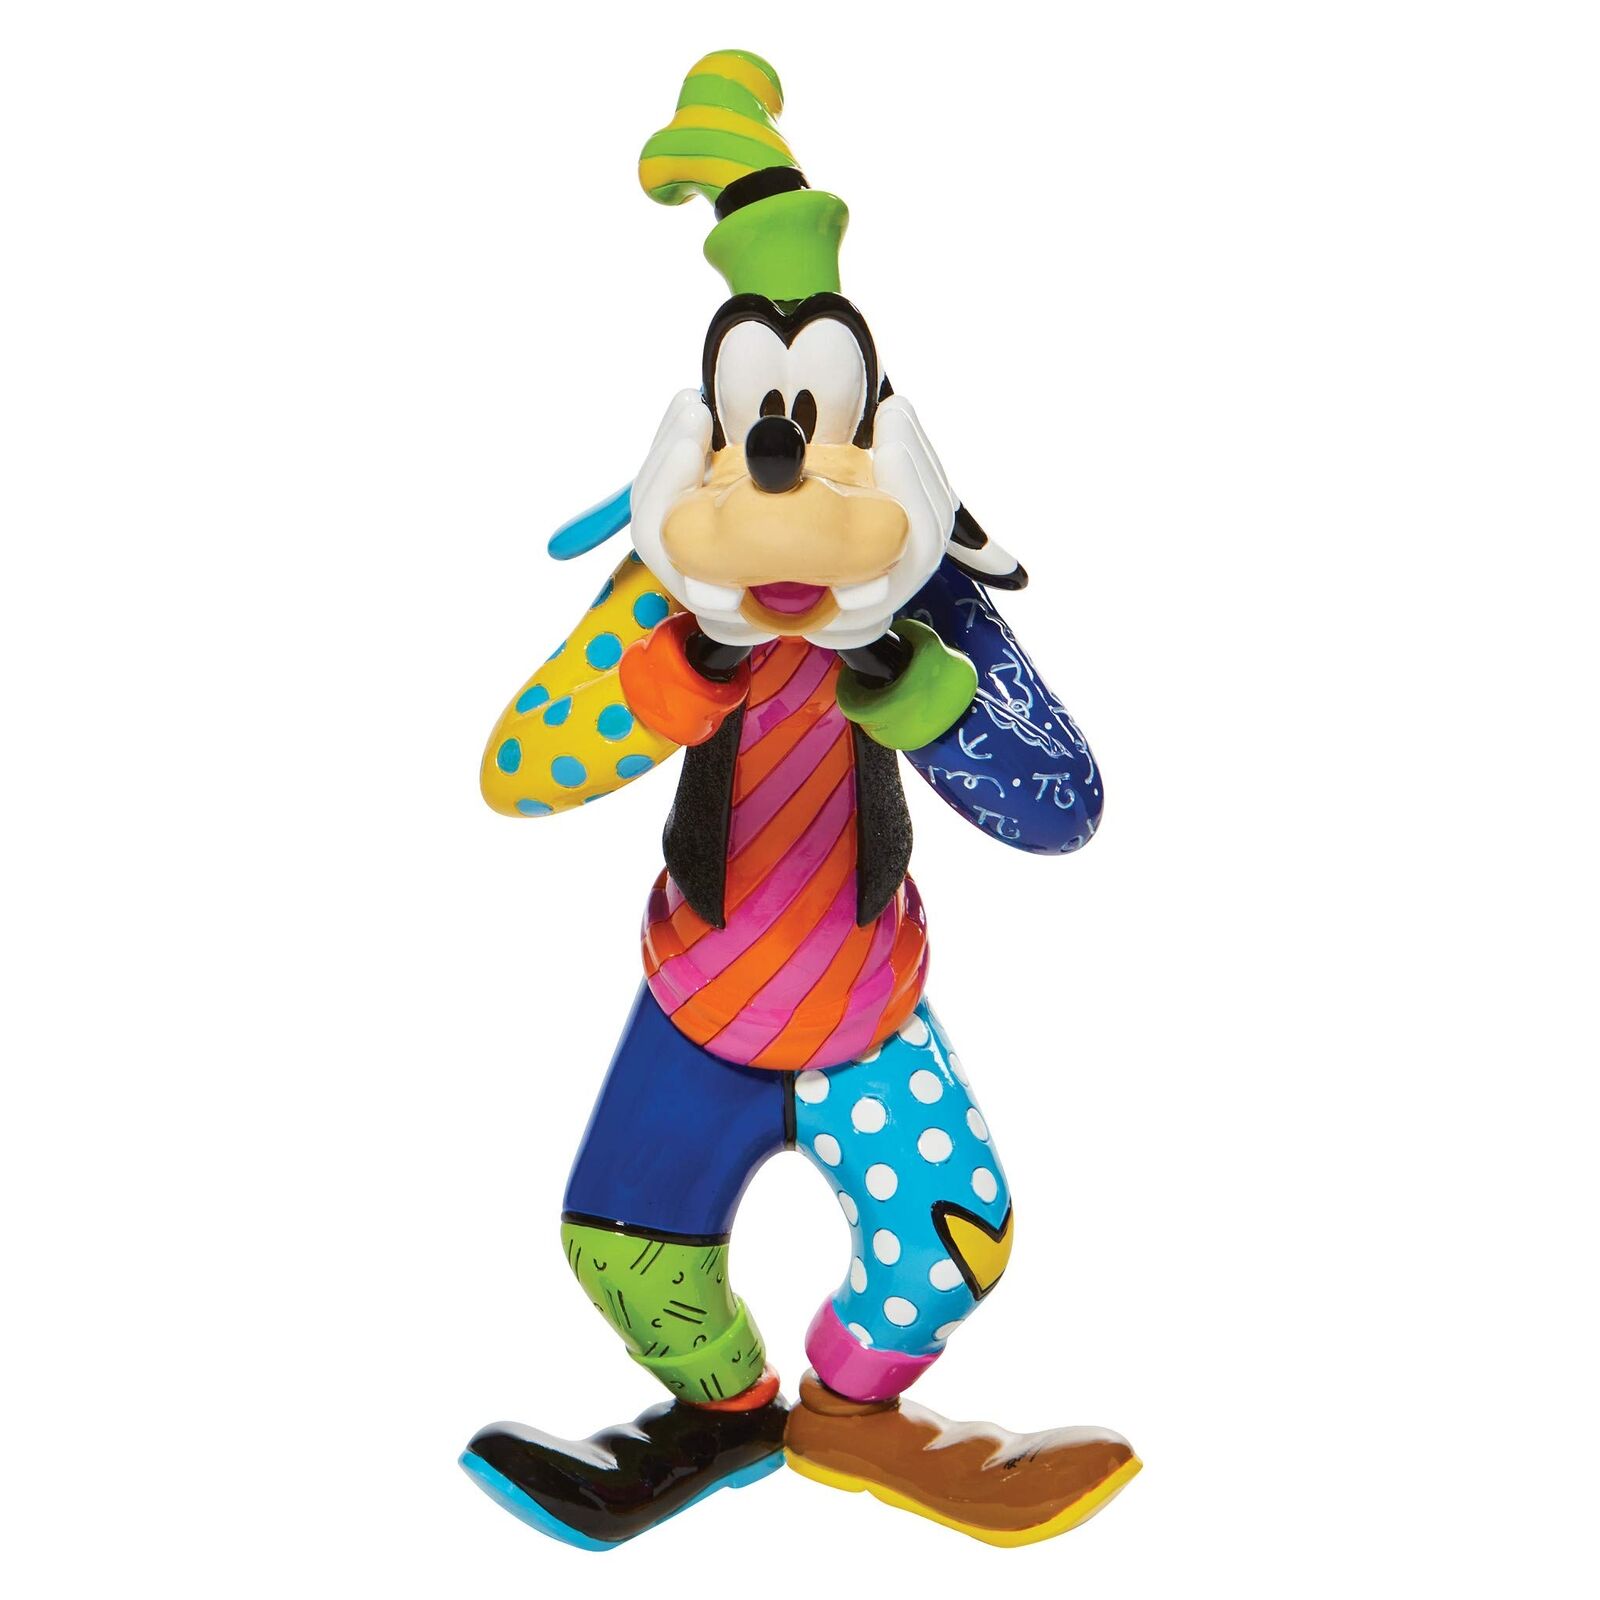 Disney by Romero Britto Goofy Figurine, 10.4 Inch, Multicolor